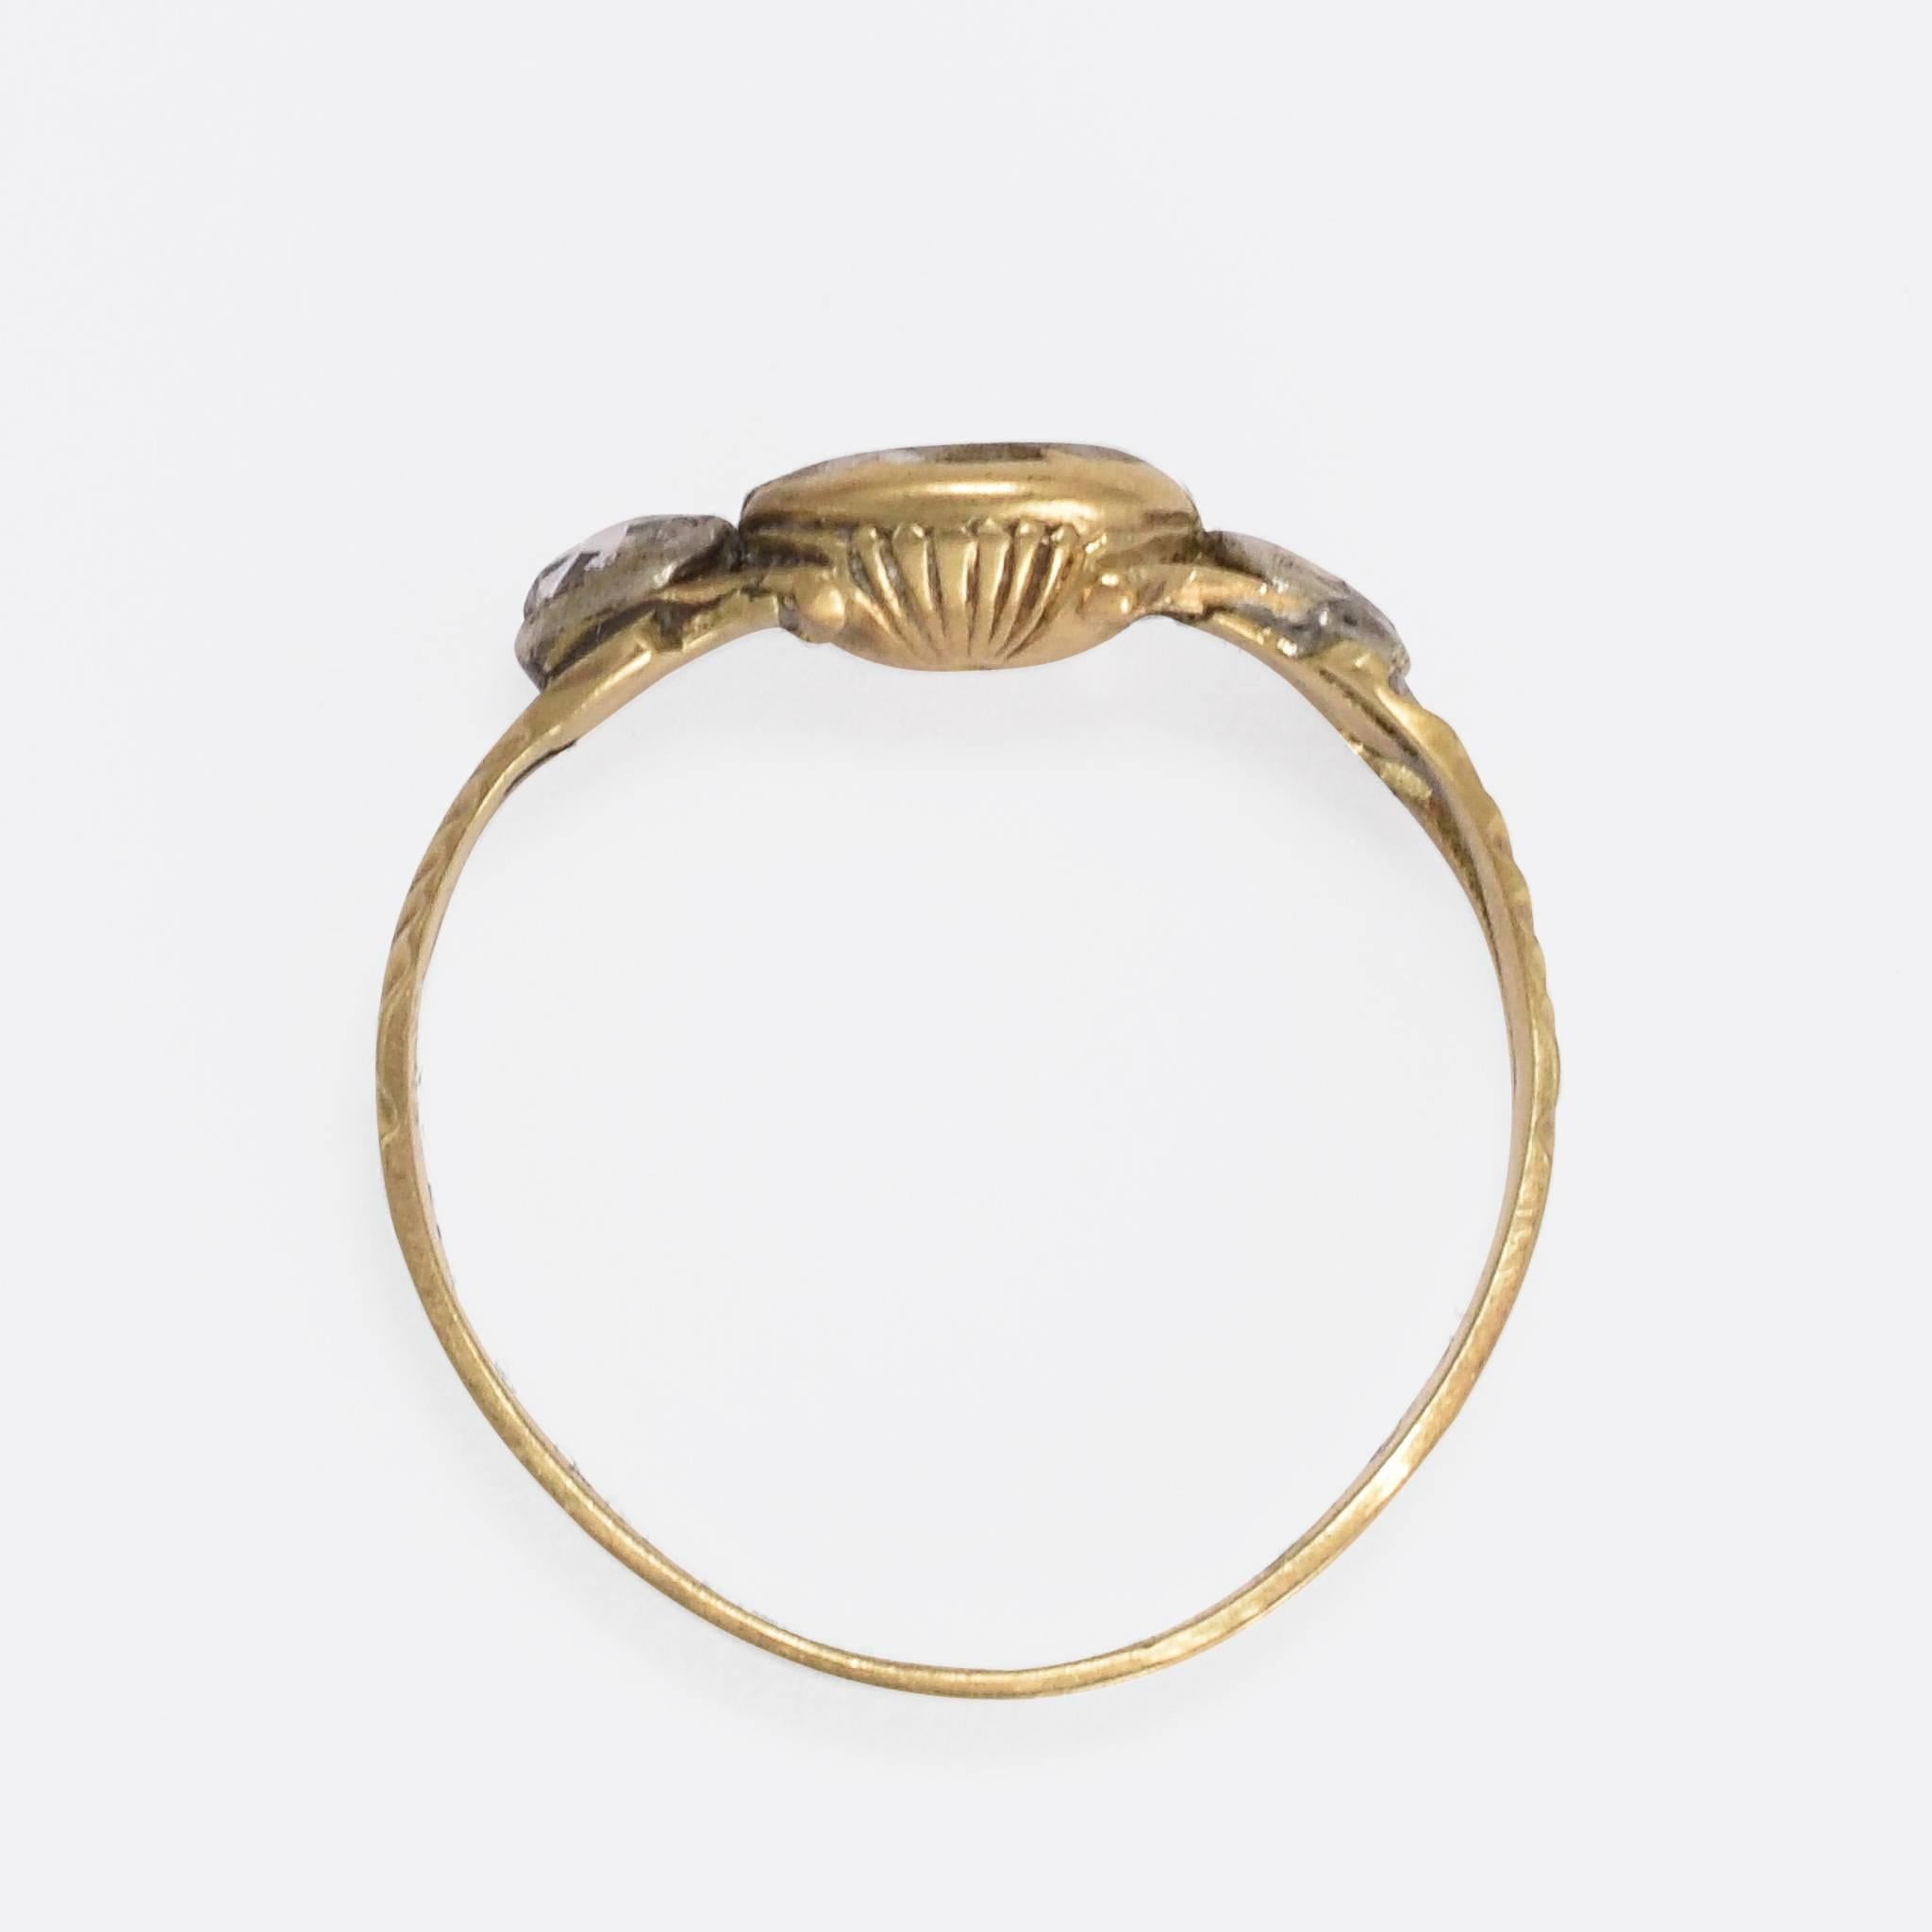 17th century rings